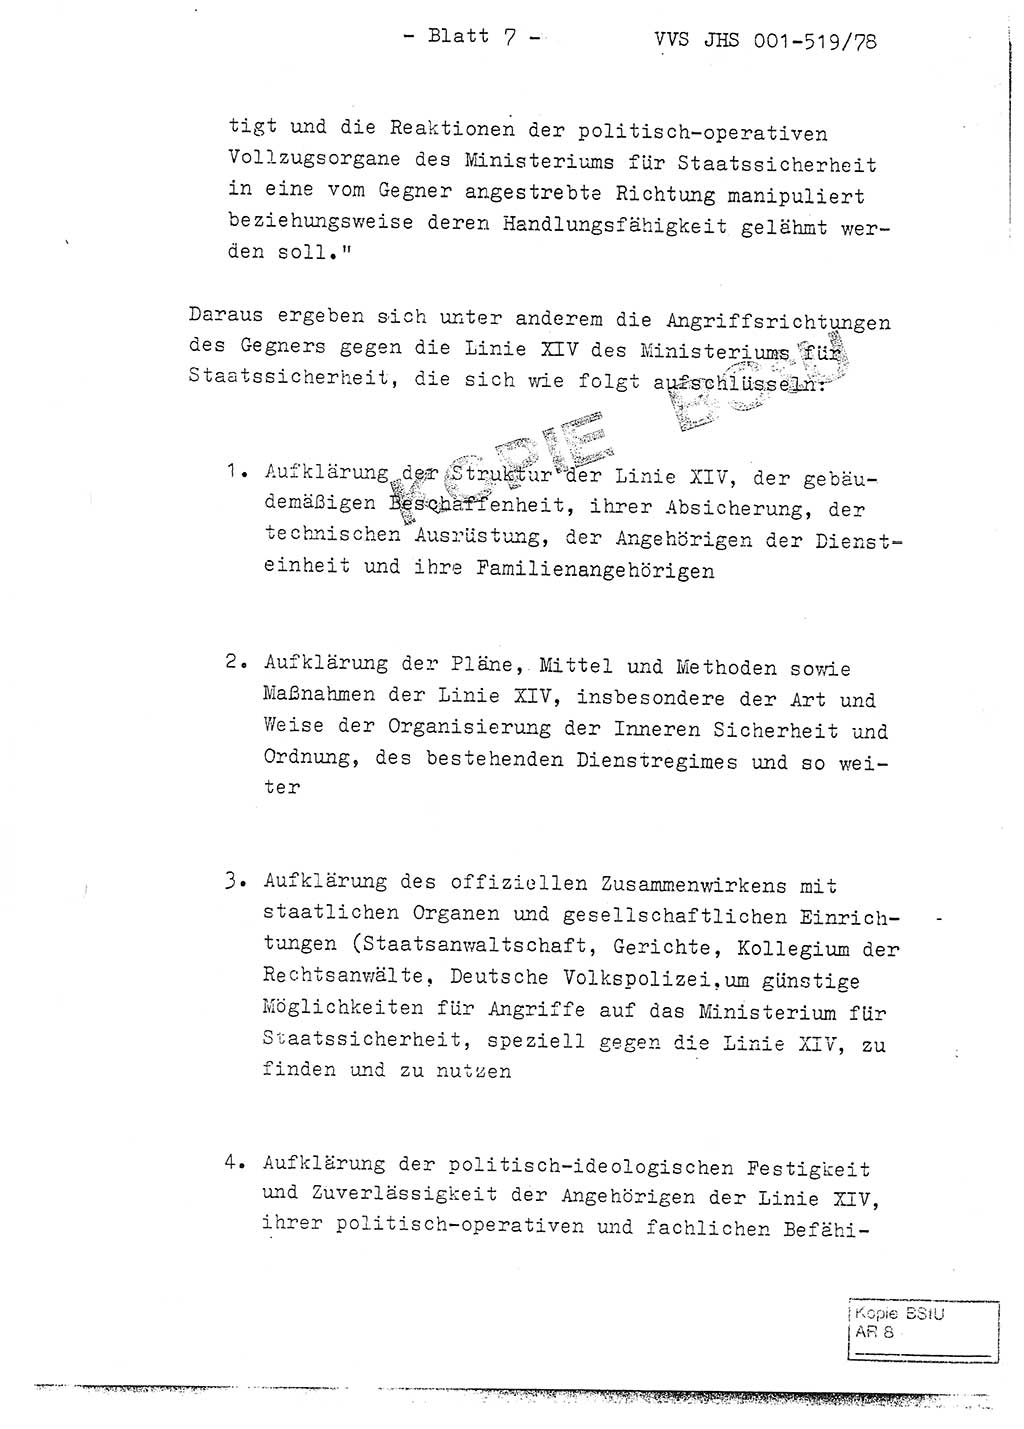 Fachschulabschlußarbeit Hauptmann Alfons Lützelberger (Abt. ⅩⅣ), Ministerium für Staatssicherheit (MfS) [Deutsche Demokratische Republik (DDR)], Juristische Hochschule (JHS), Vertrauliche Verschlußsache (VVS) 001-519/78, Potsdam 1978, Blatt 7 (FS-Abschl.-Arb. MfS DDR JHS VVS 001-519/78 1978, Bl. 7)